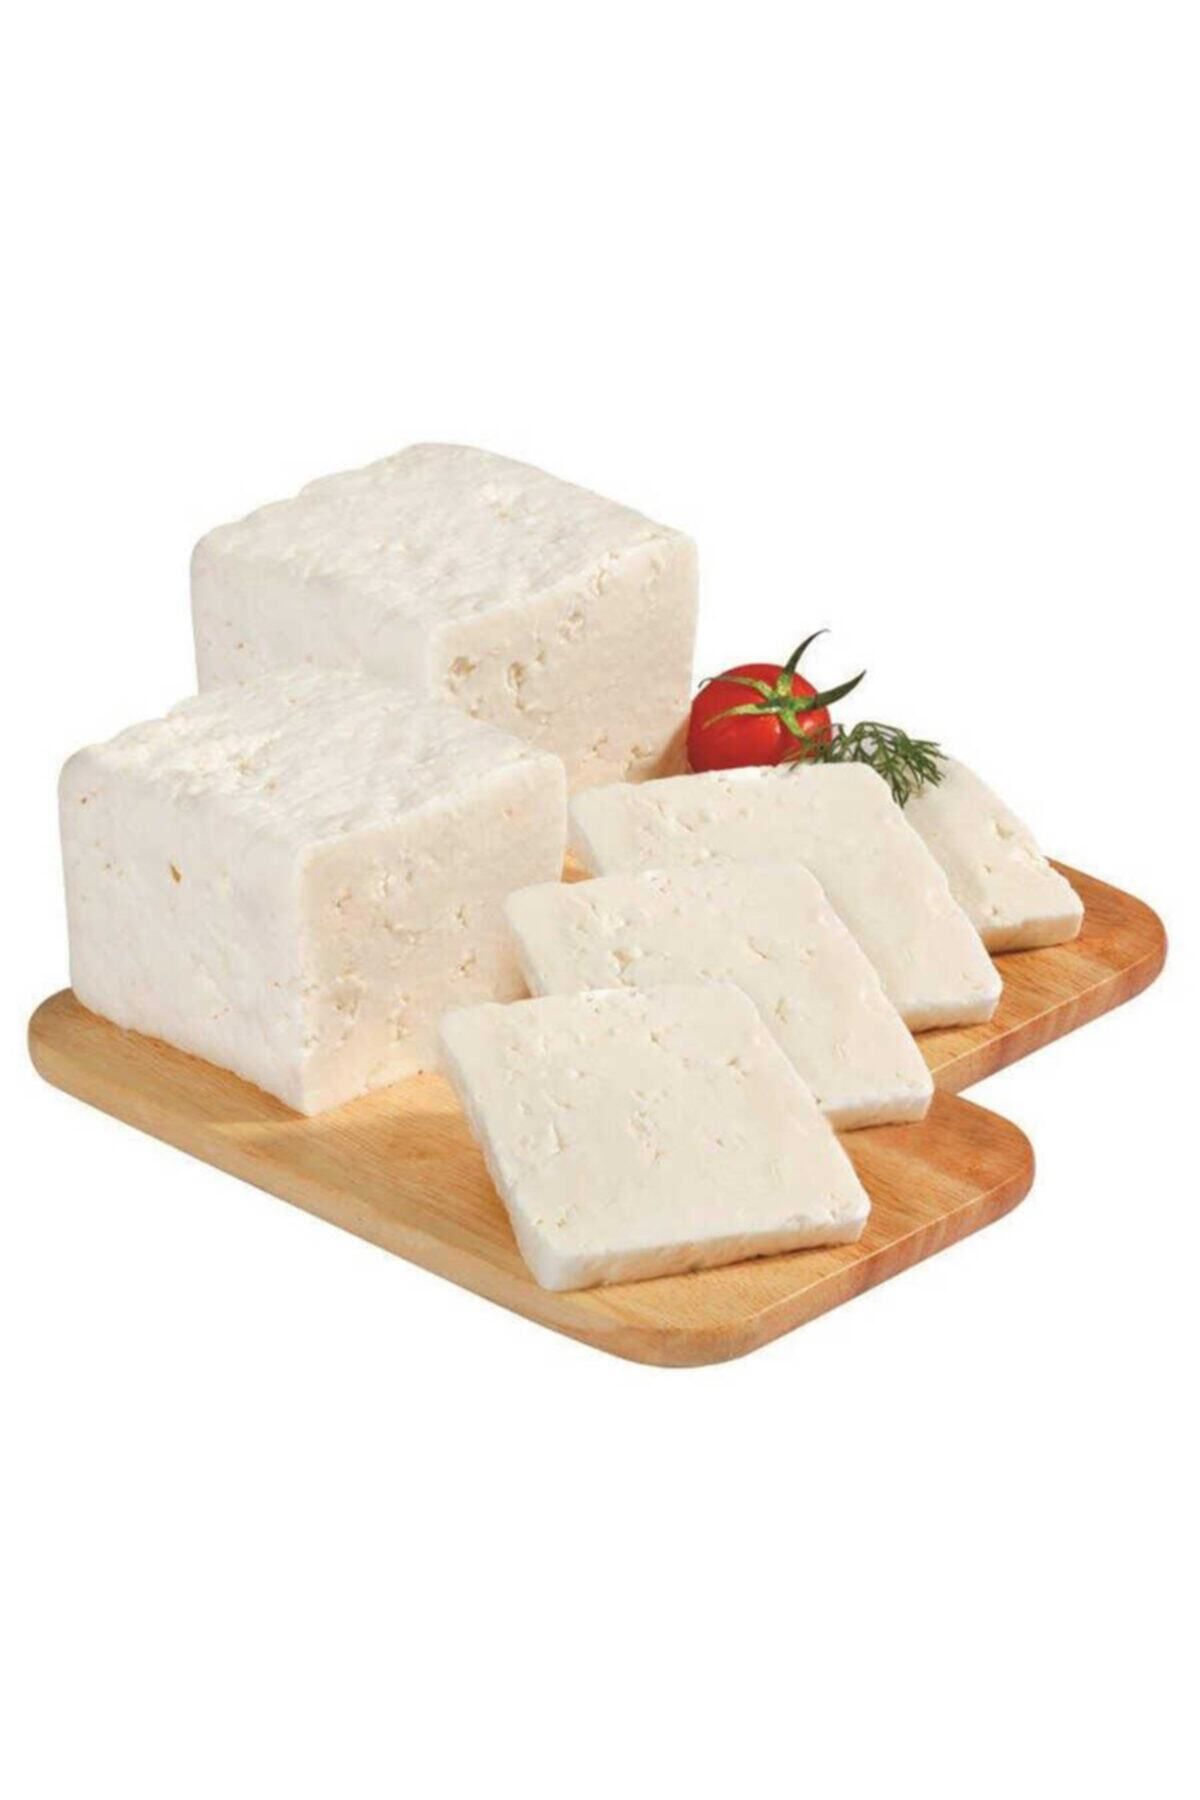 Kınalıkuzu Az Tuzlu Az Yağlı Diyet Taze Beyaz Peynir 1 Kg